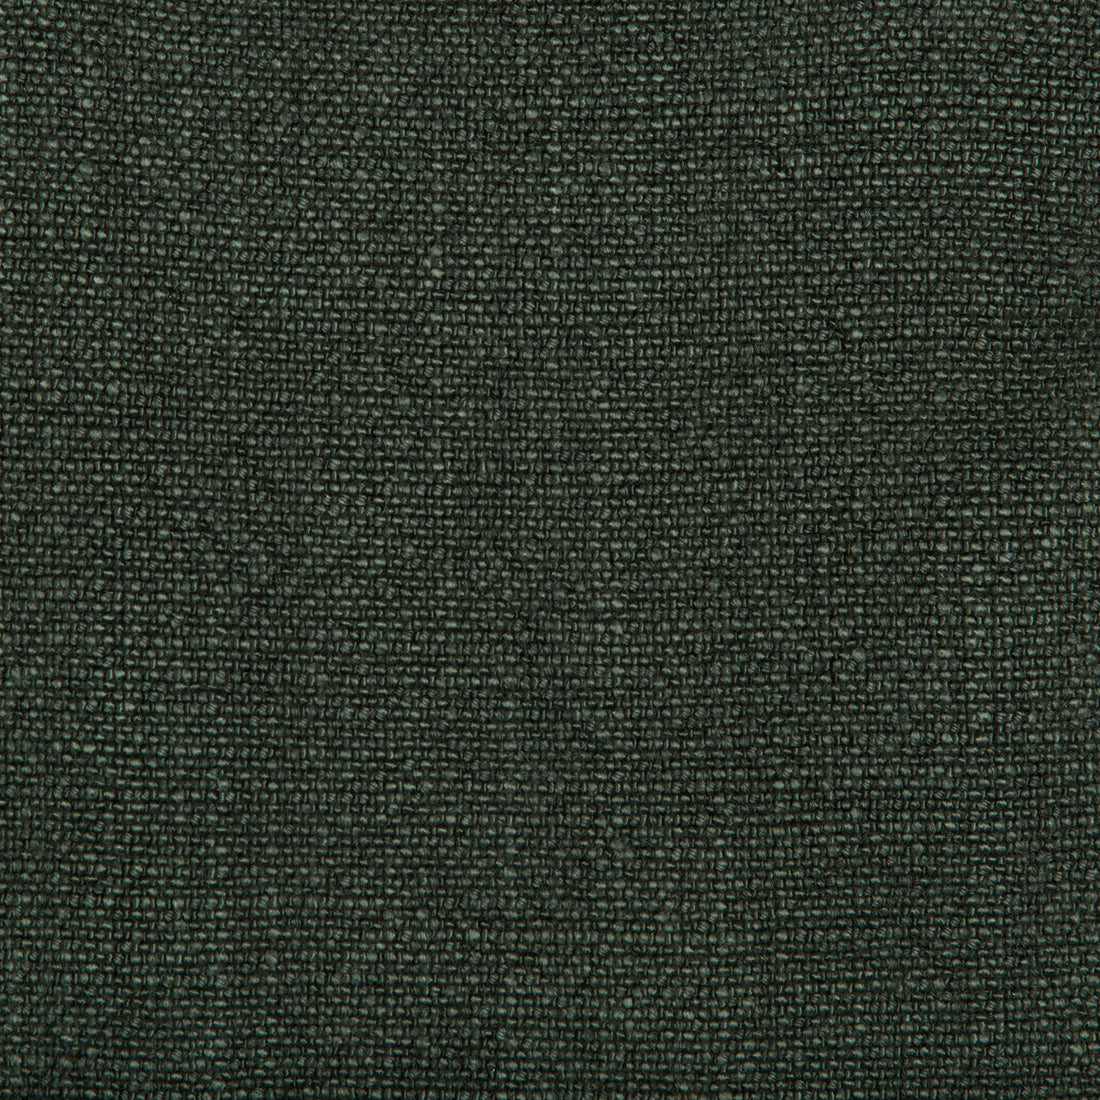 Kravet Basics fabric in 35189-30 color - pattern 35189.30.0 - by Kravet Basics